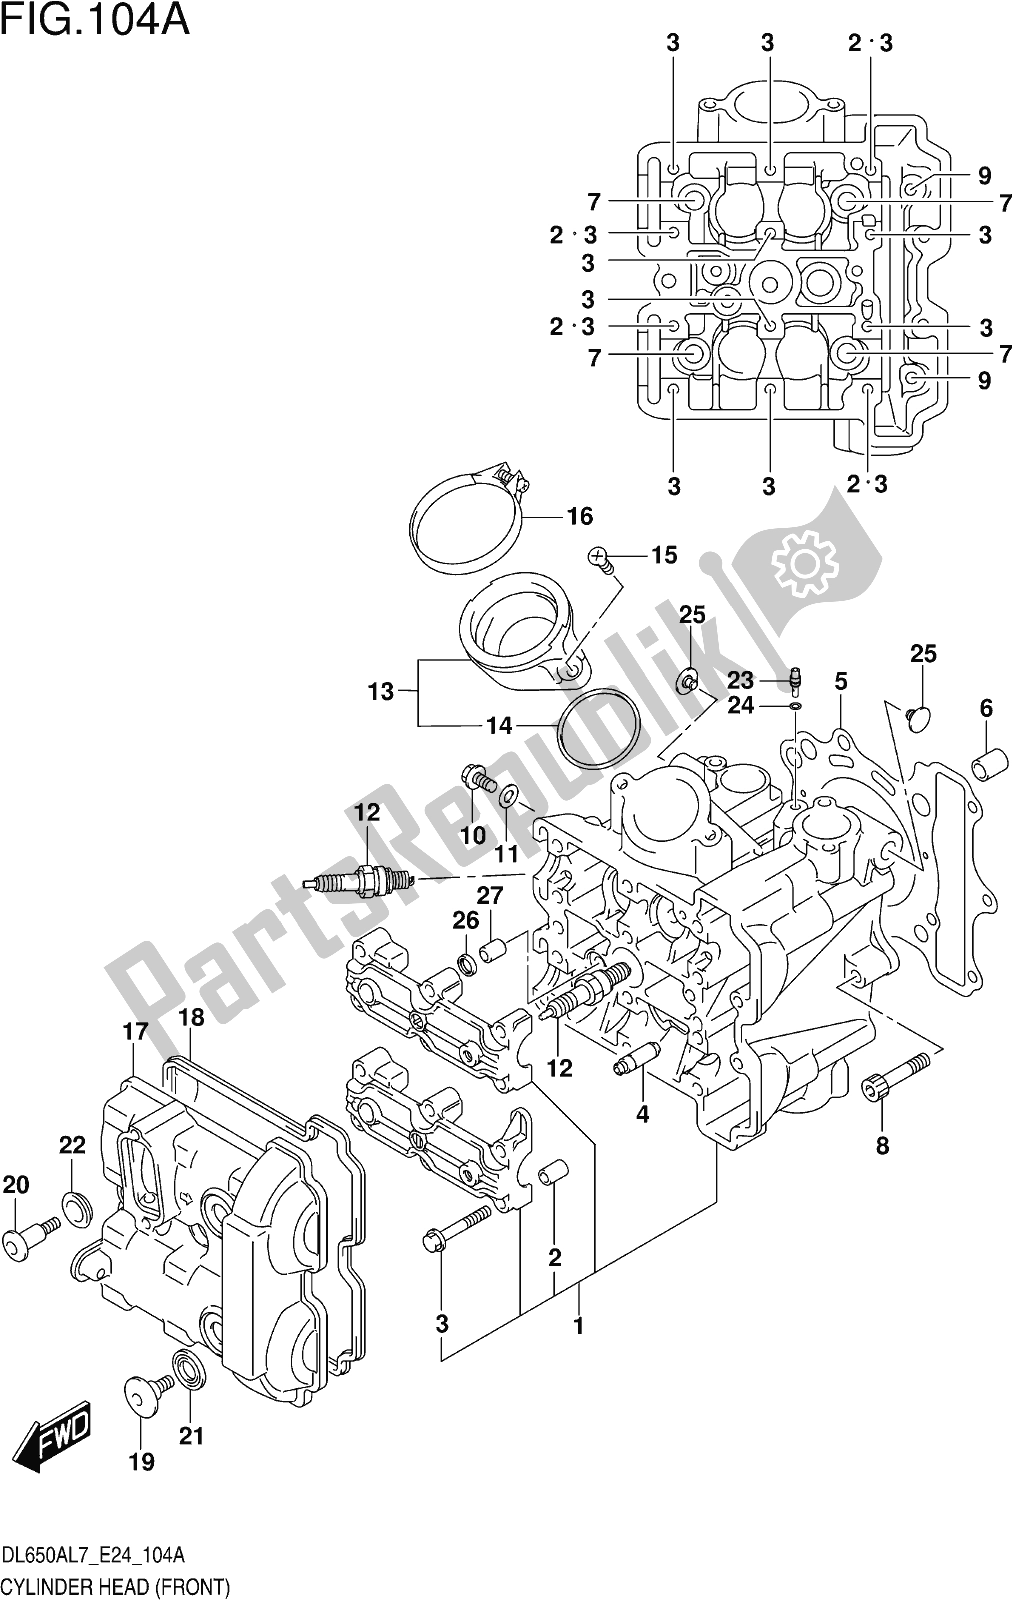 Todas las partes para Fig. 104a Cylinder Head (front) de Suzuki DL 650 Xaue V Strom 2017